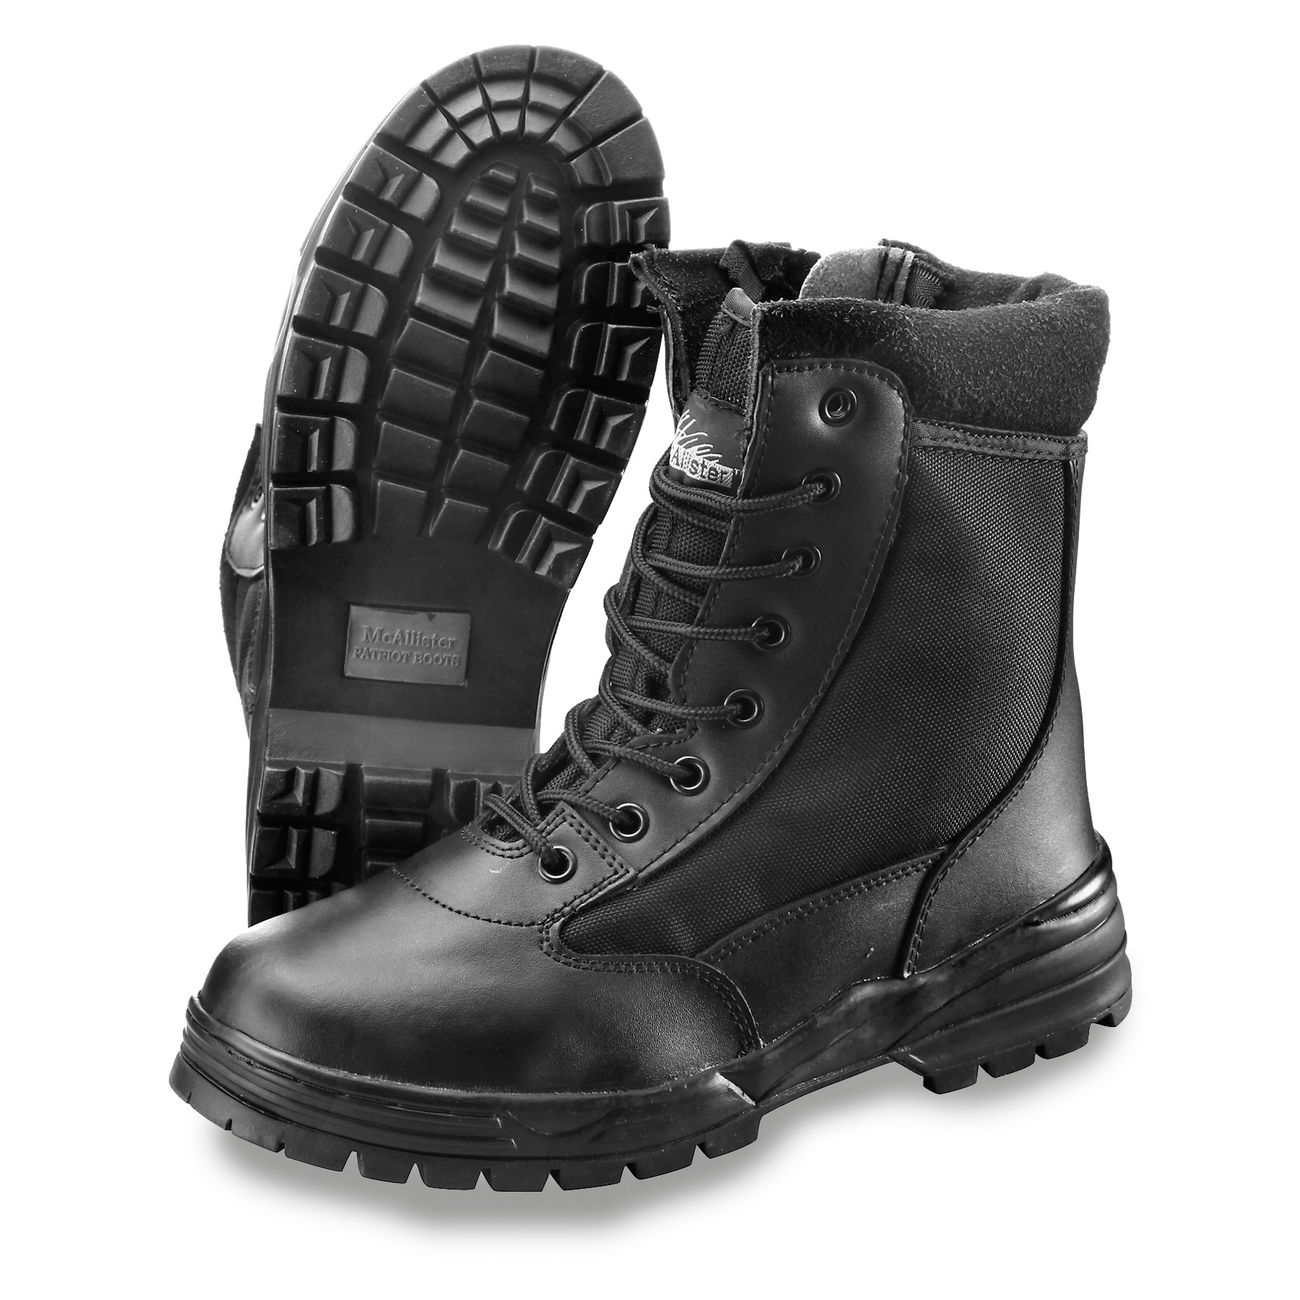 McAllister Boots PatriotStyle, m. Zipper, schwarz Bild 1